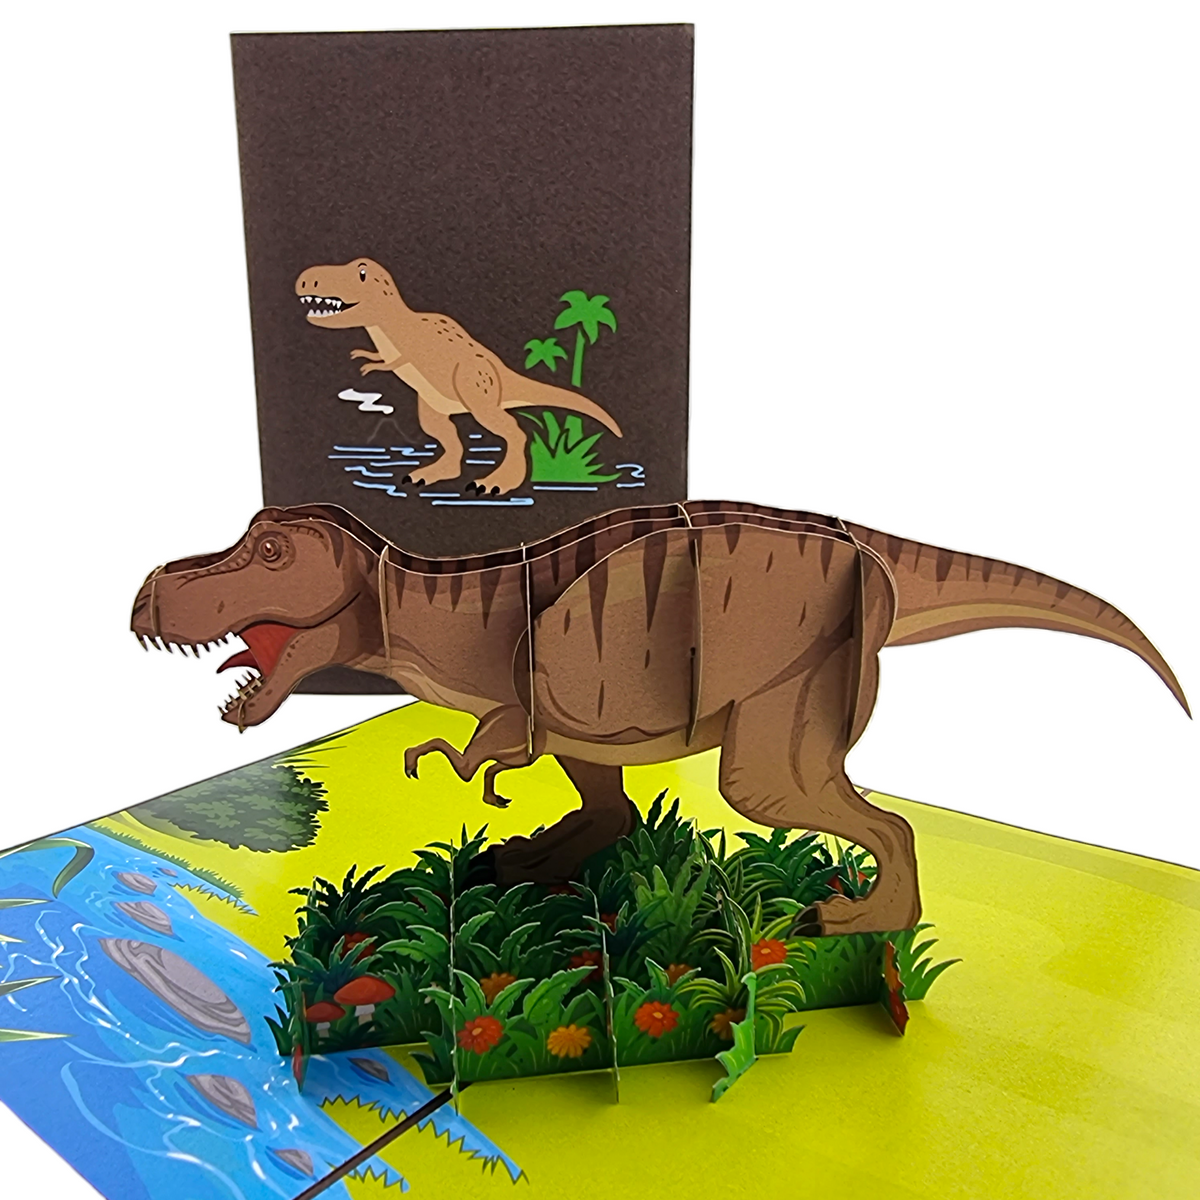 T-Rex Dinosaur Pop Up Card